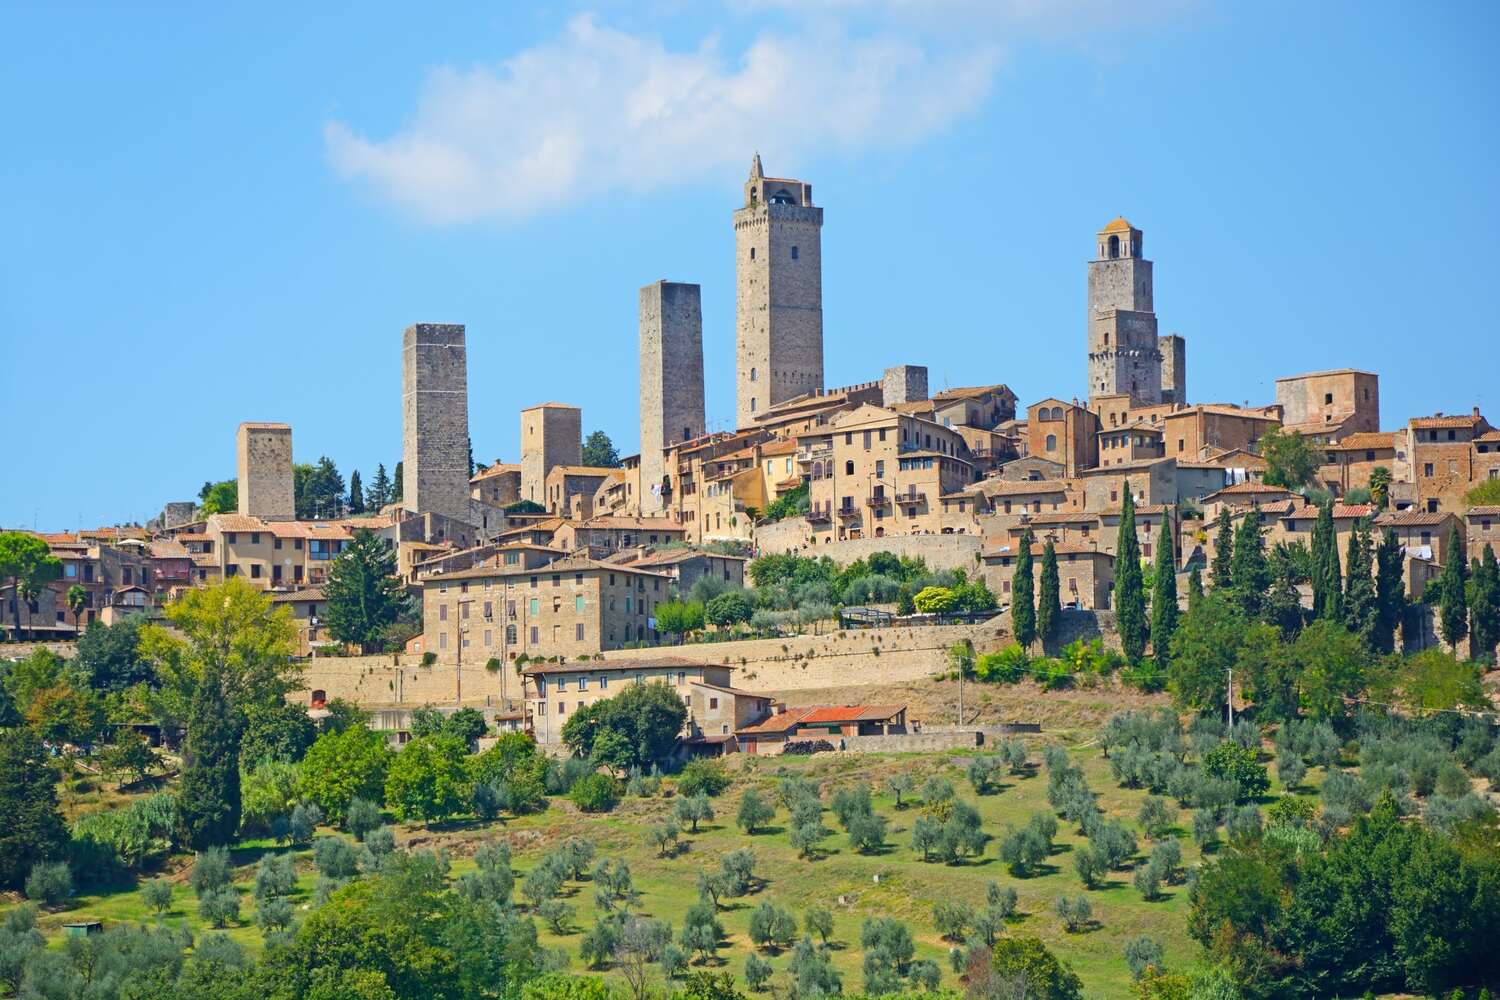 Tuscan Town of San Gimignano